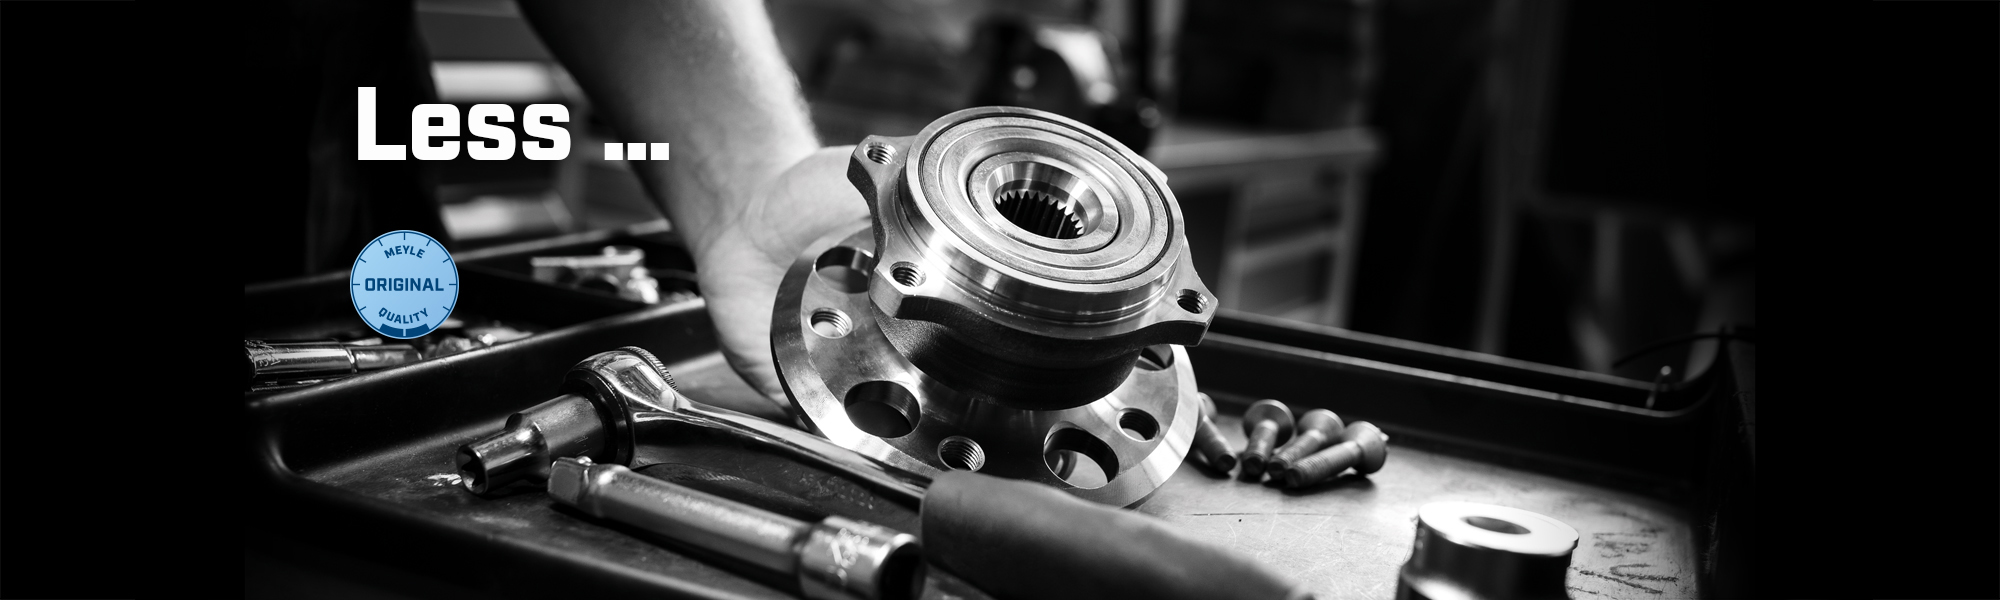 Wheel bearing repair kit